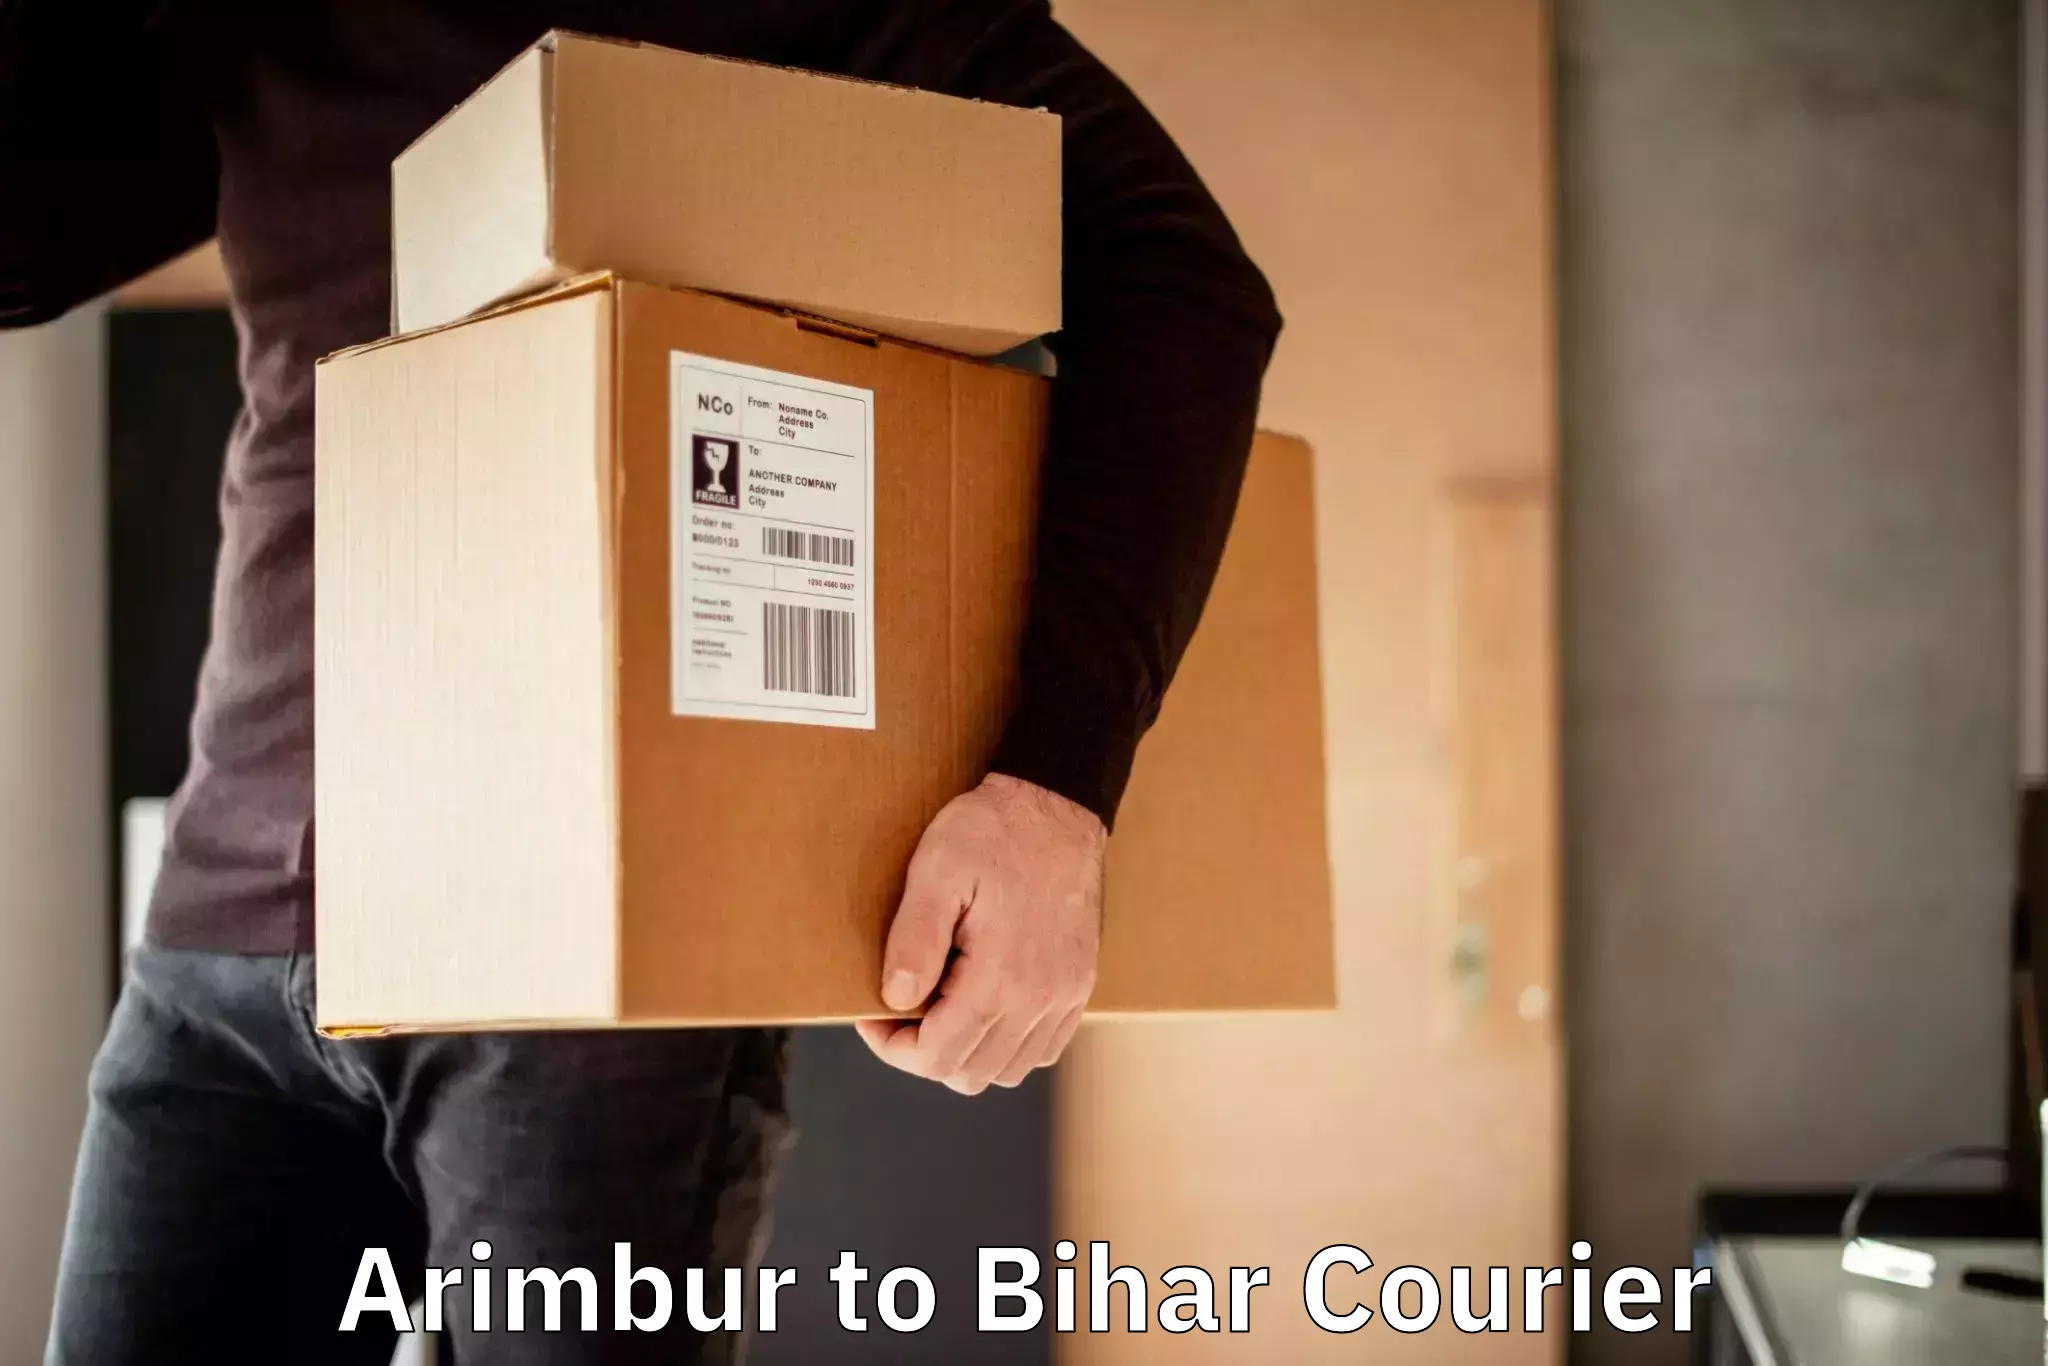 24/7 courier service Arimbur to Dehri